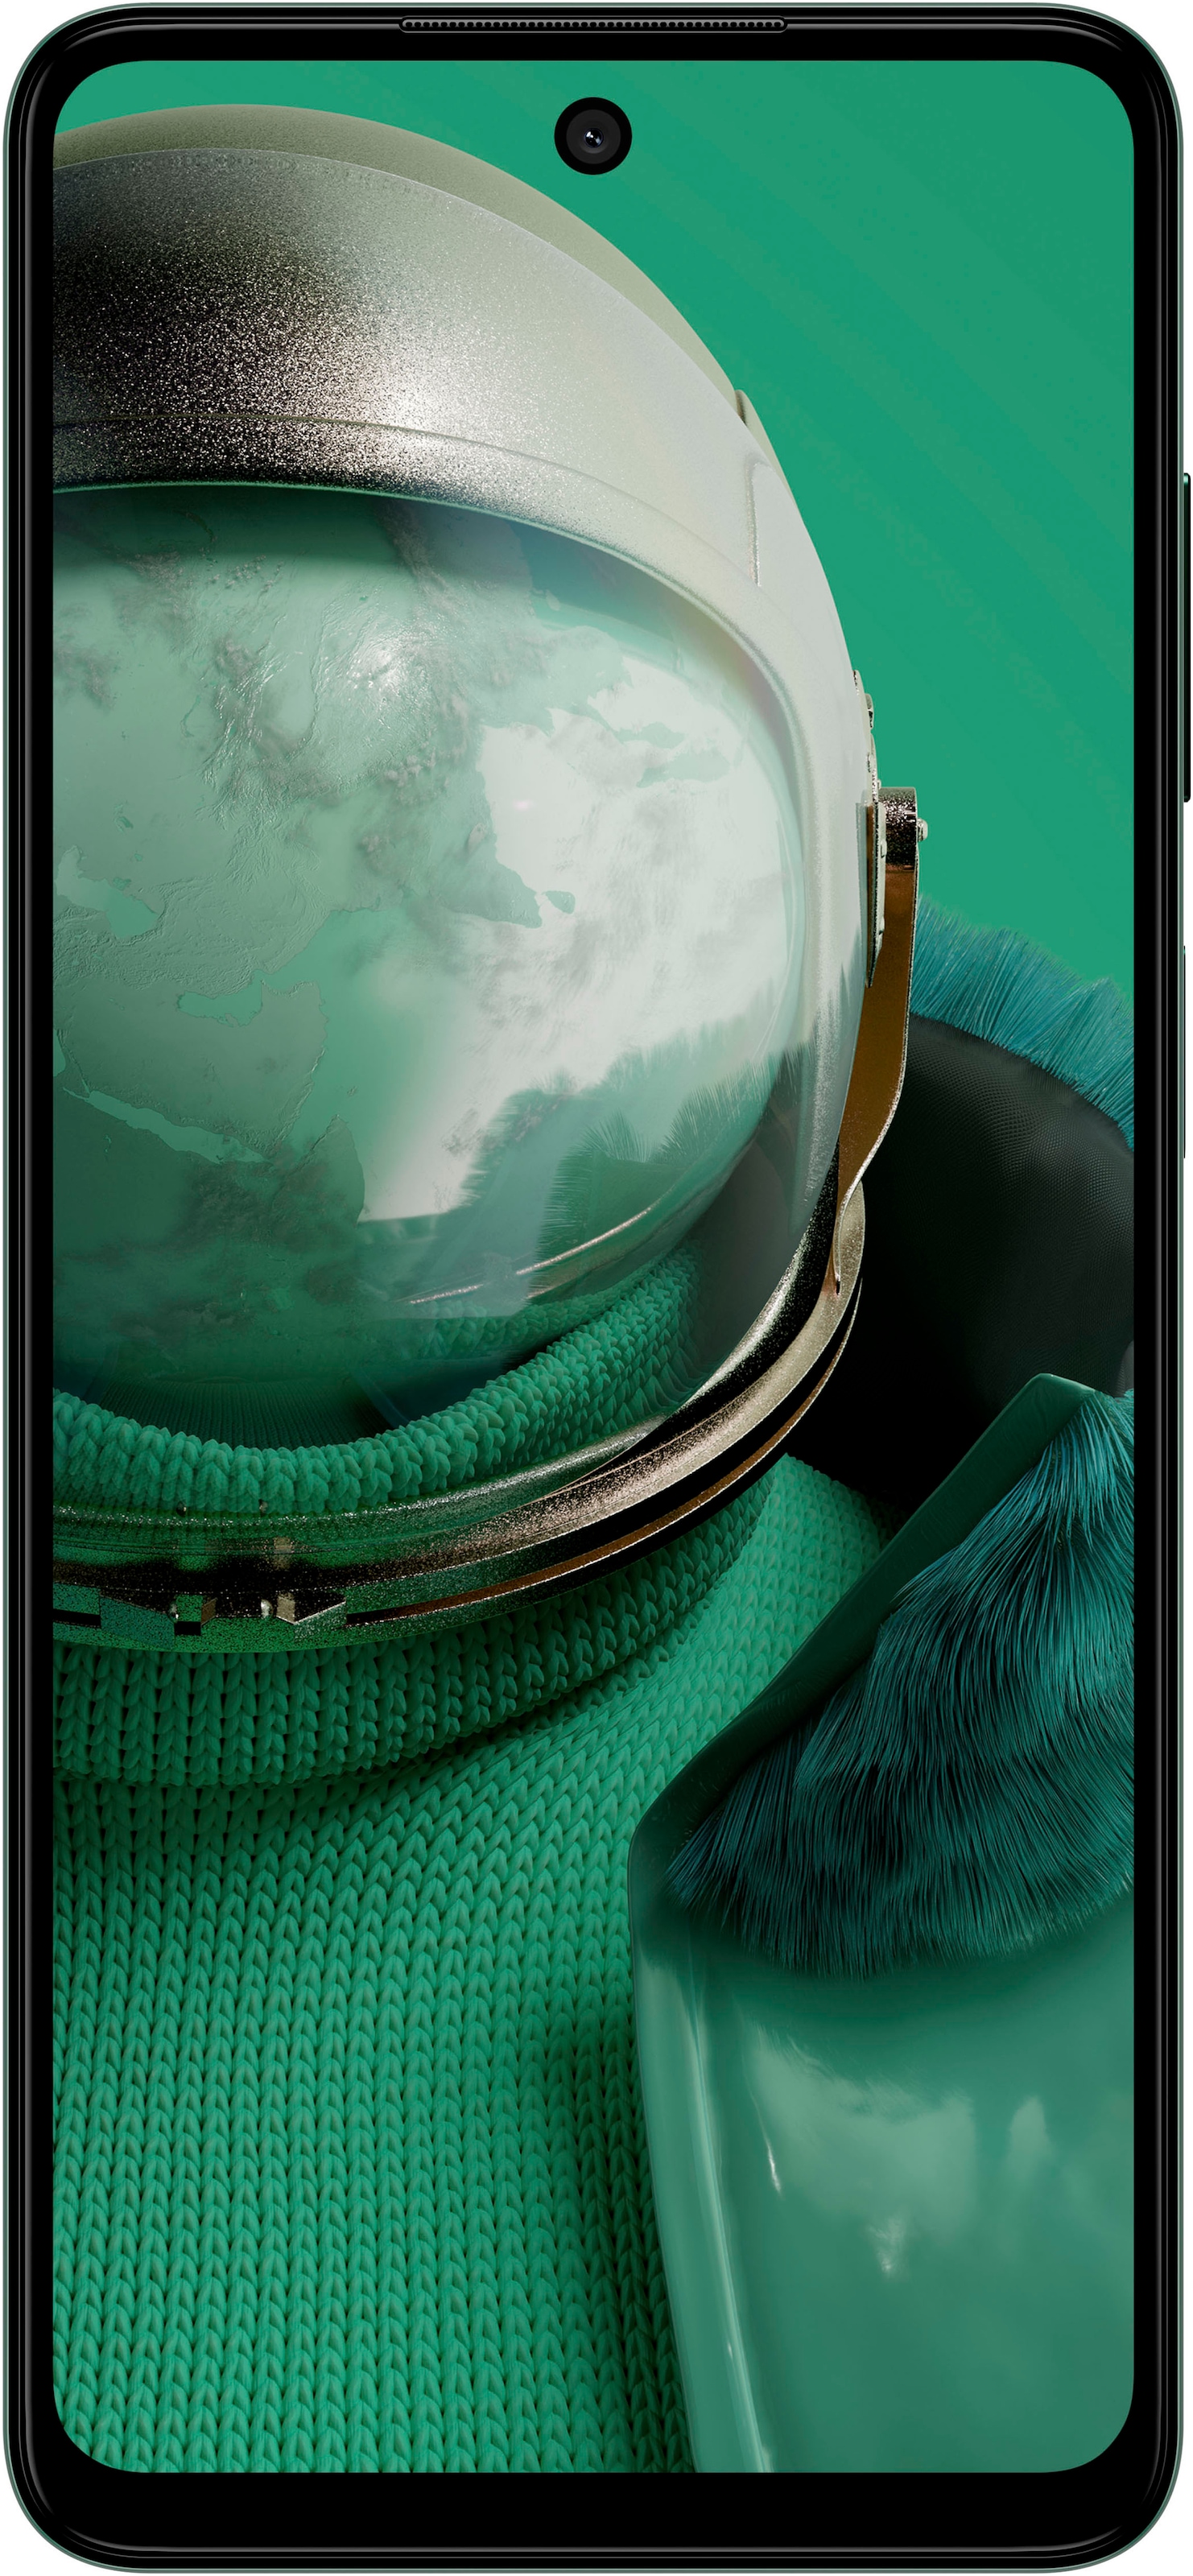 Smartphone »Pulse Pro«, Glacier Green, 16,66 cm/6,56 Zoll, 128 GB Speicherplatz, 50 MP...